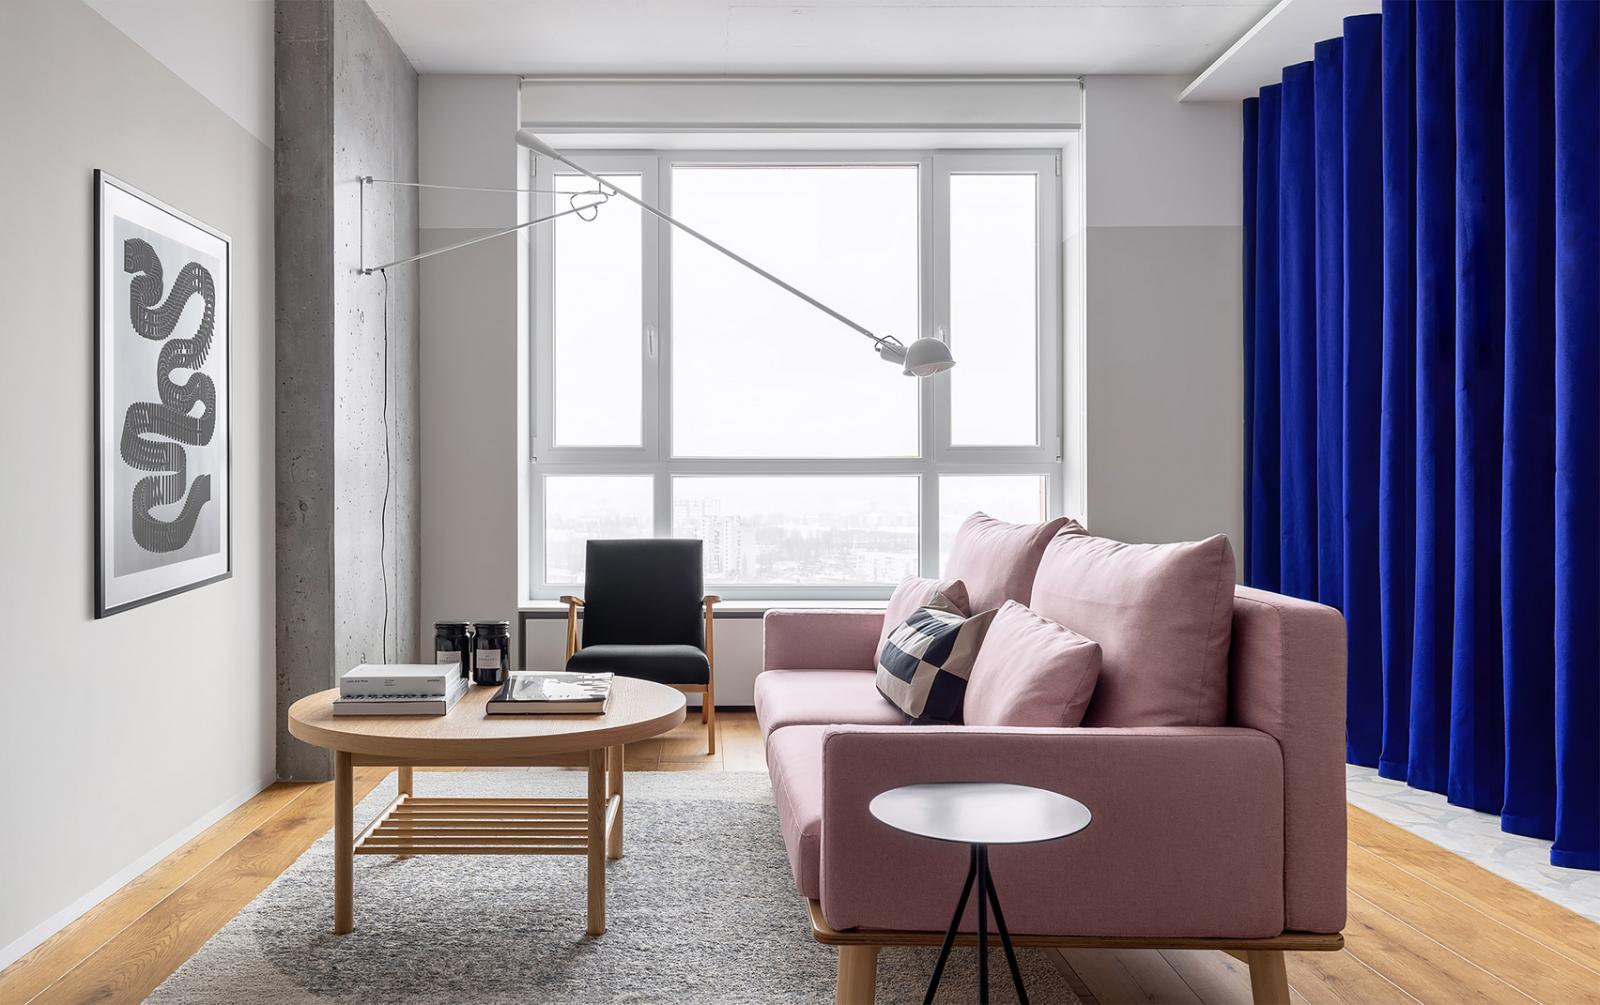 Hình ảnh toàn cảnh phòng khách căn hộ với sofa màu hồng, bàn trà gỗ, ghế tựa màu đen, tranh nghệ thuật treo tường